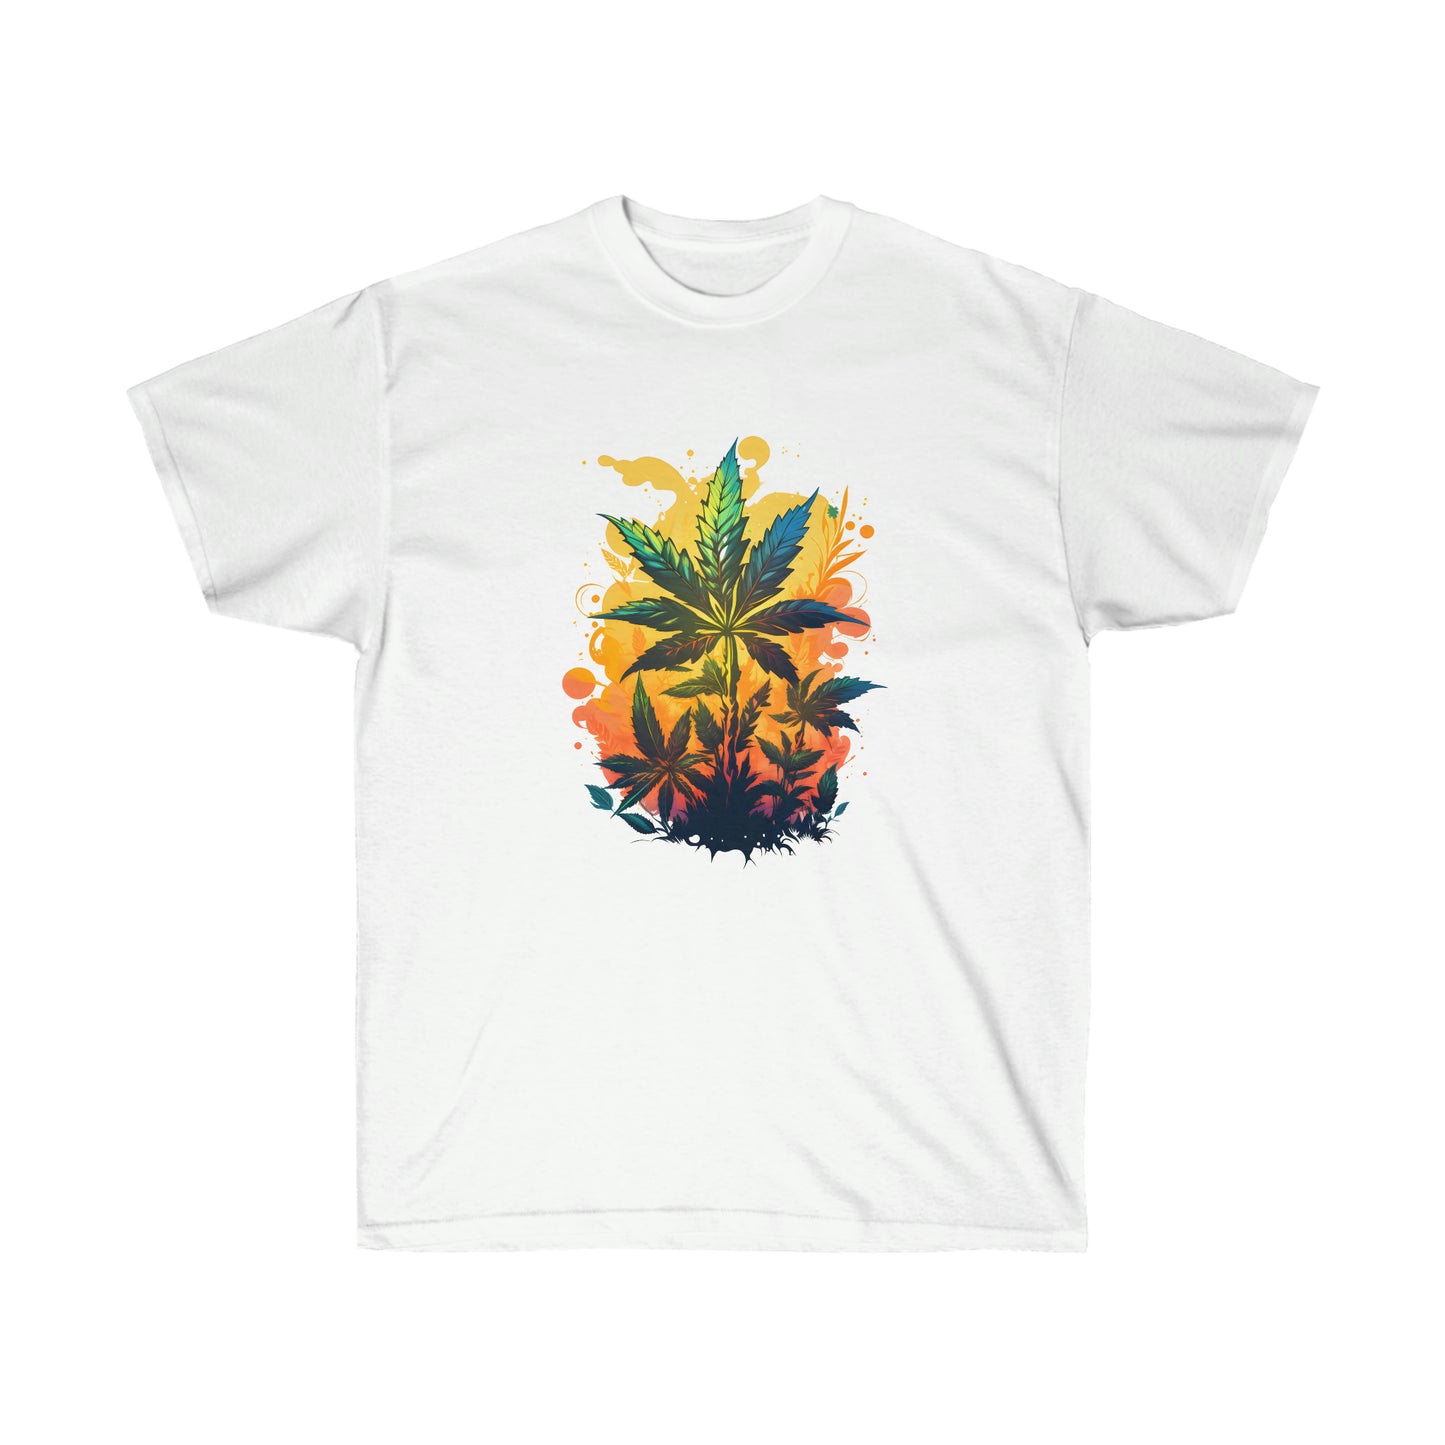 A white, warm cannabis paradise t-shirt